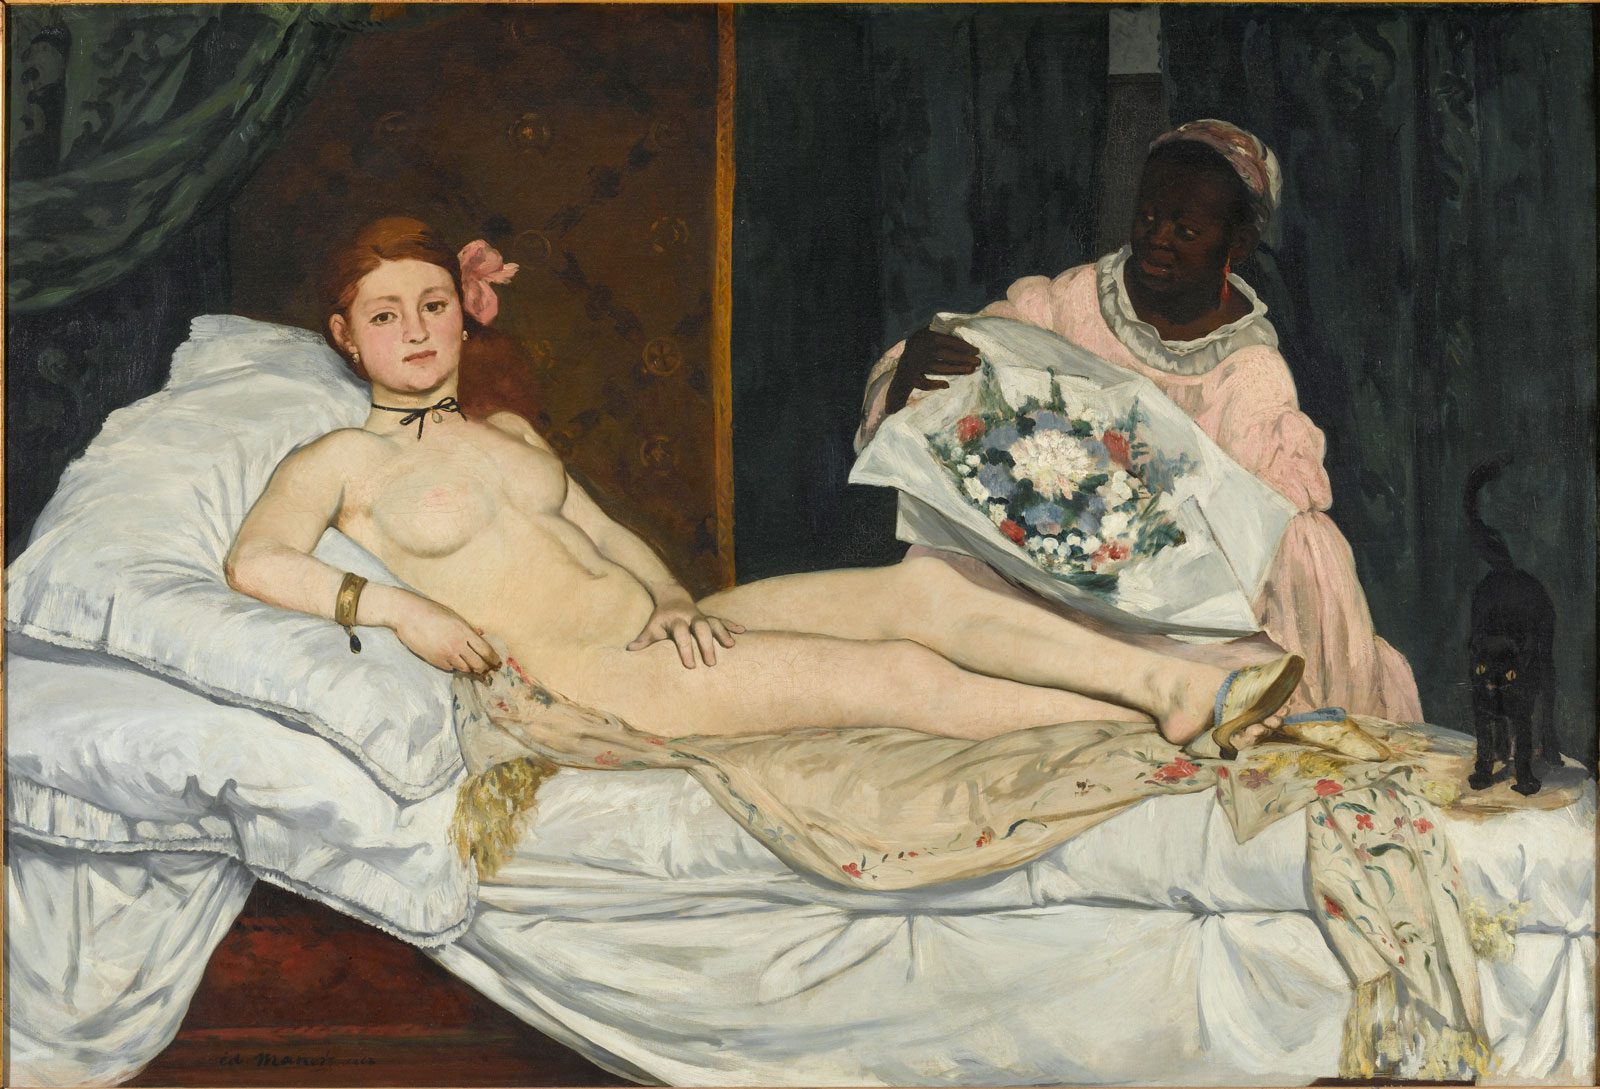 Édouard Manet, Laure, 1863. Oil on canvas, 130 x 190 cm (via Wikimedia Commons, Musée d’Orsay, Paris)